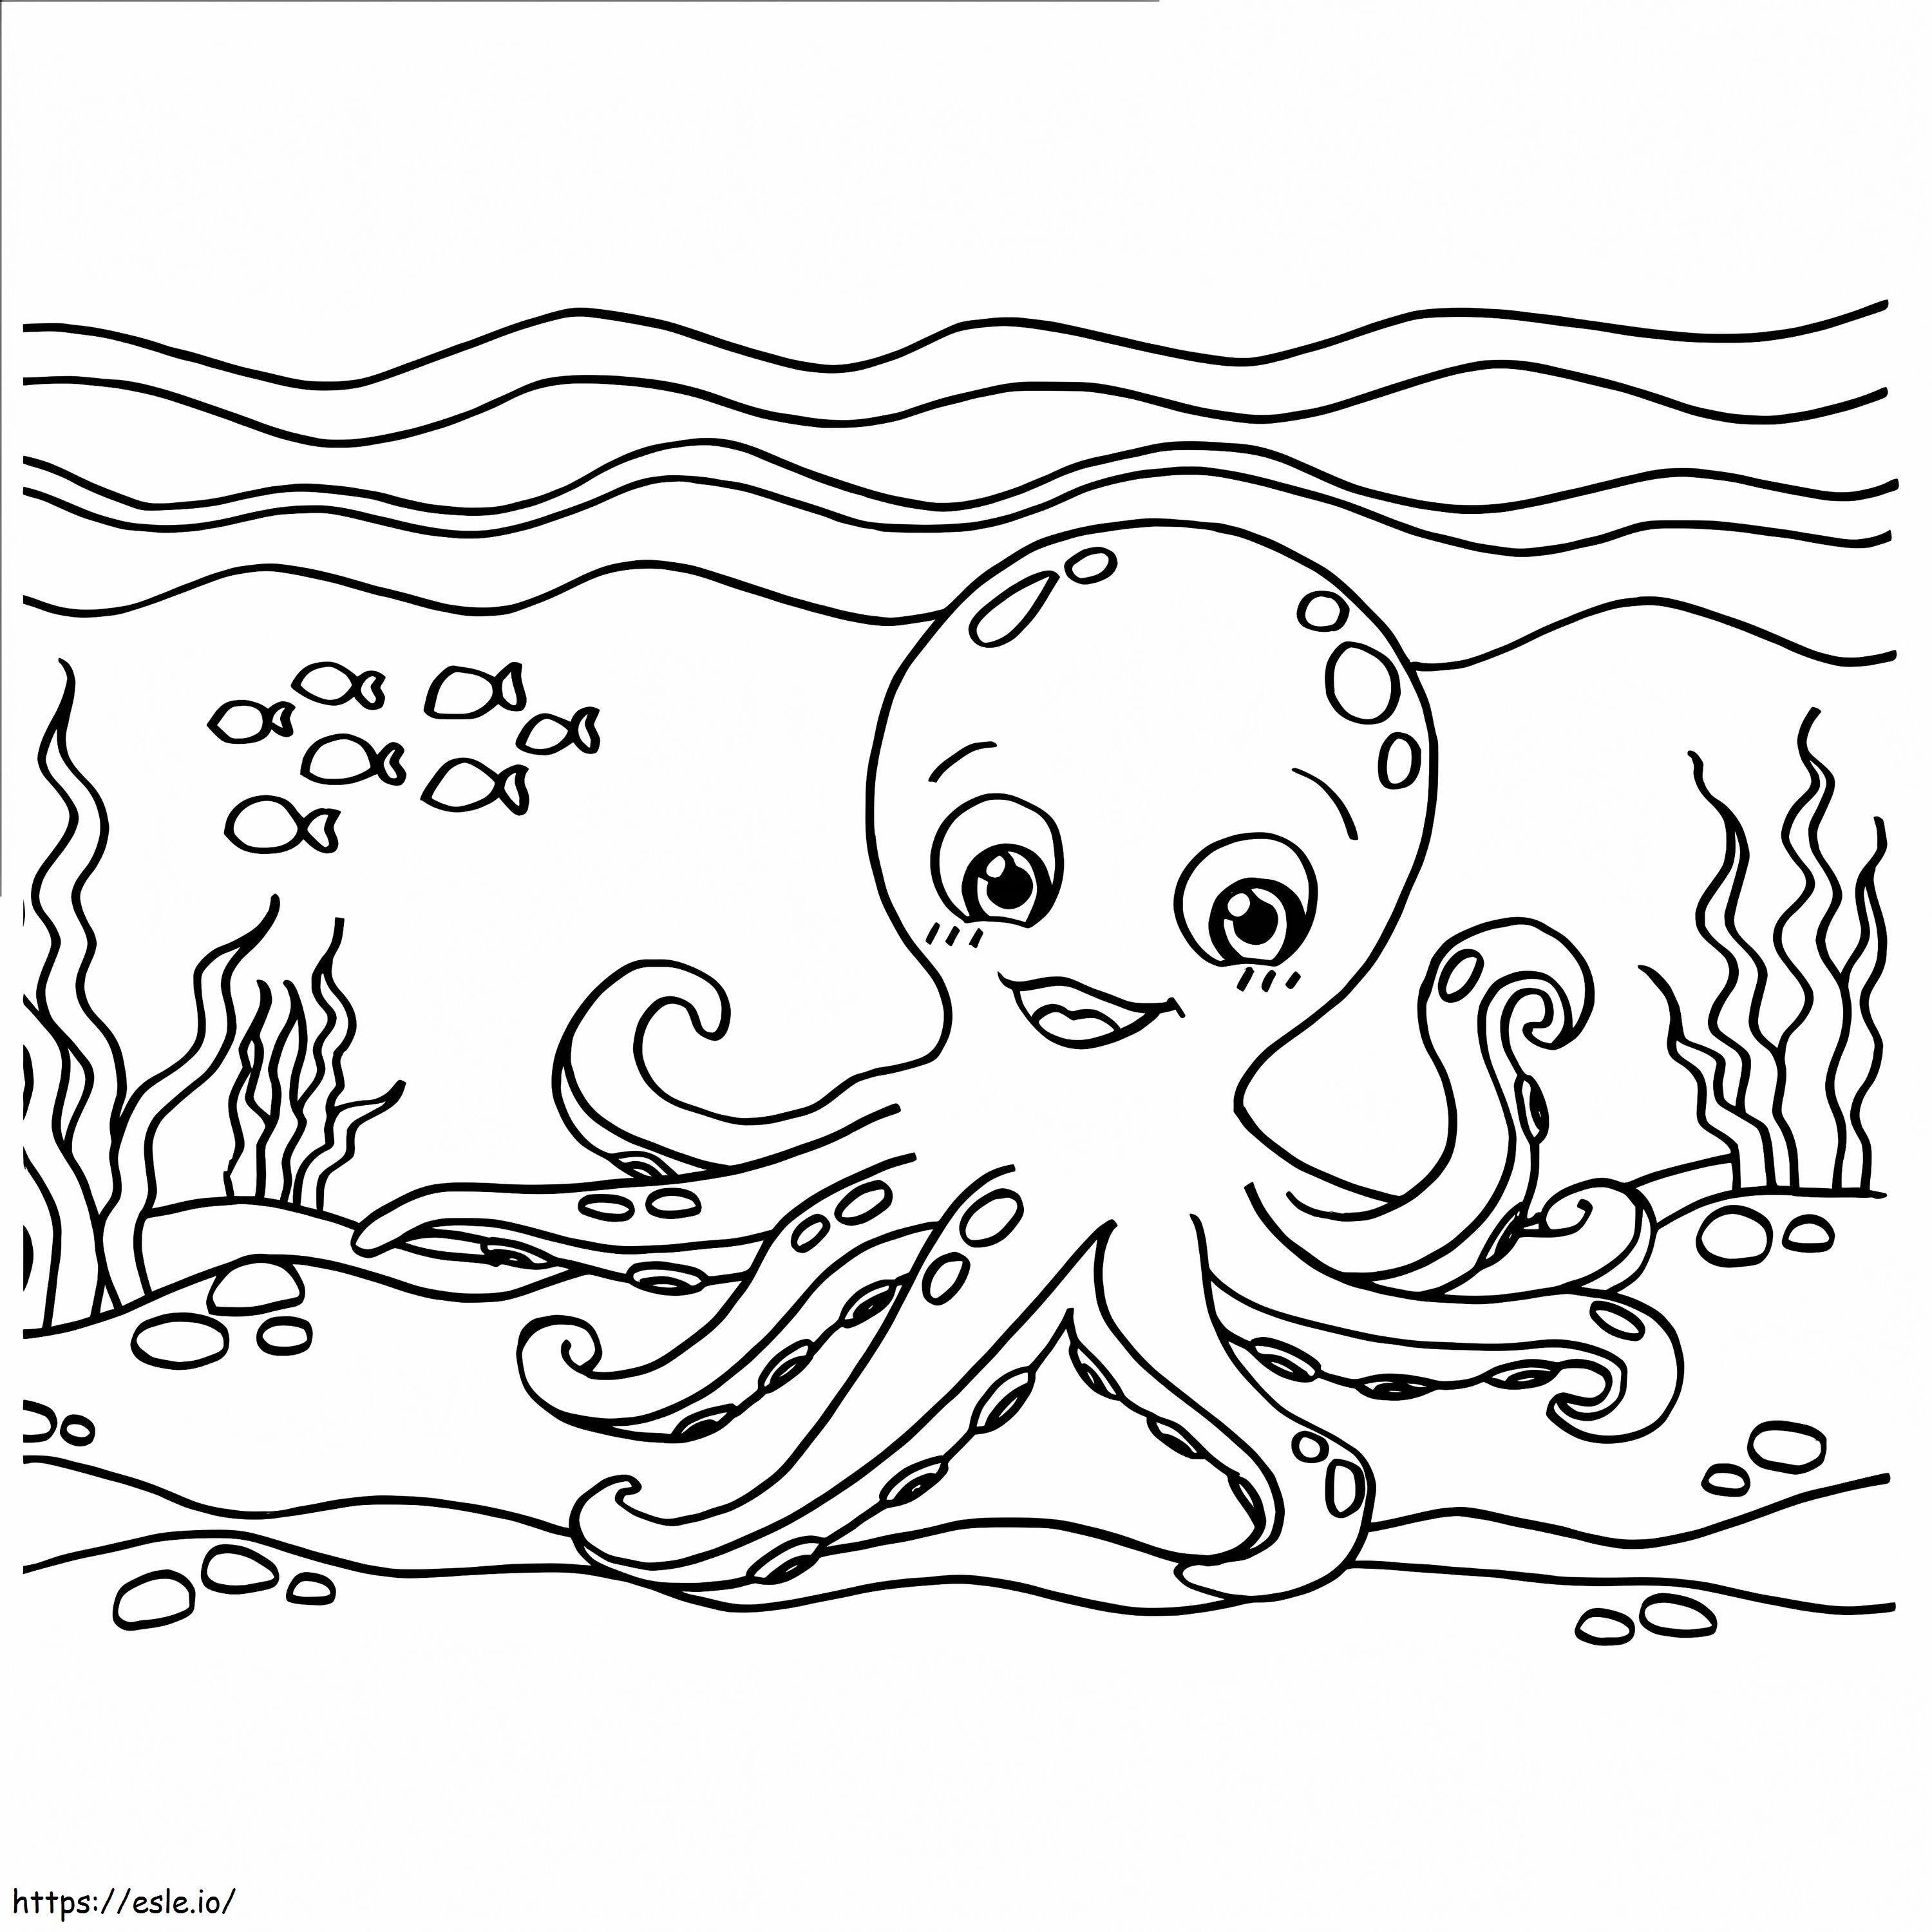 Flauschiger Oktopus ausmalbilder